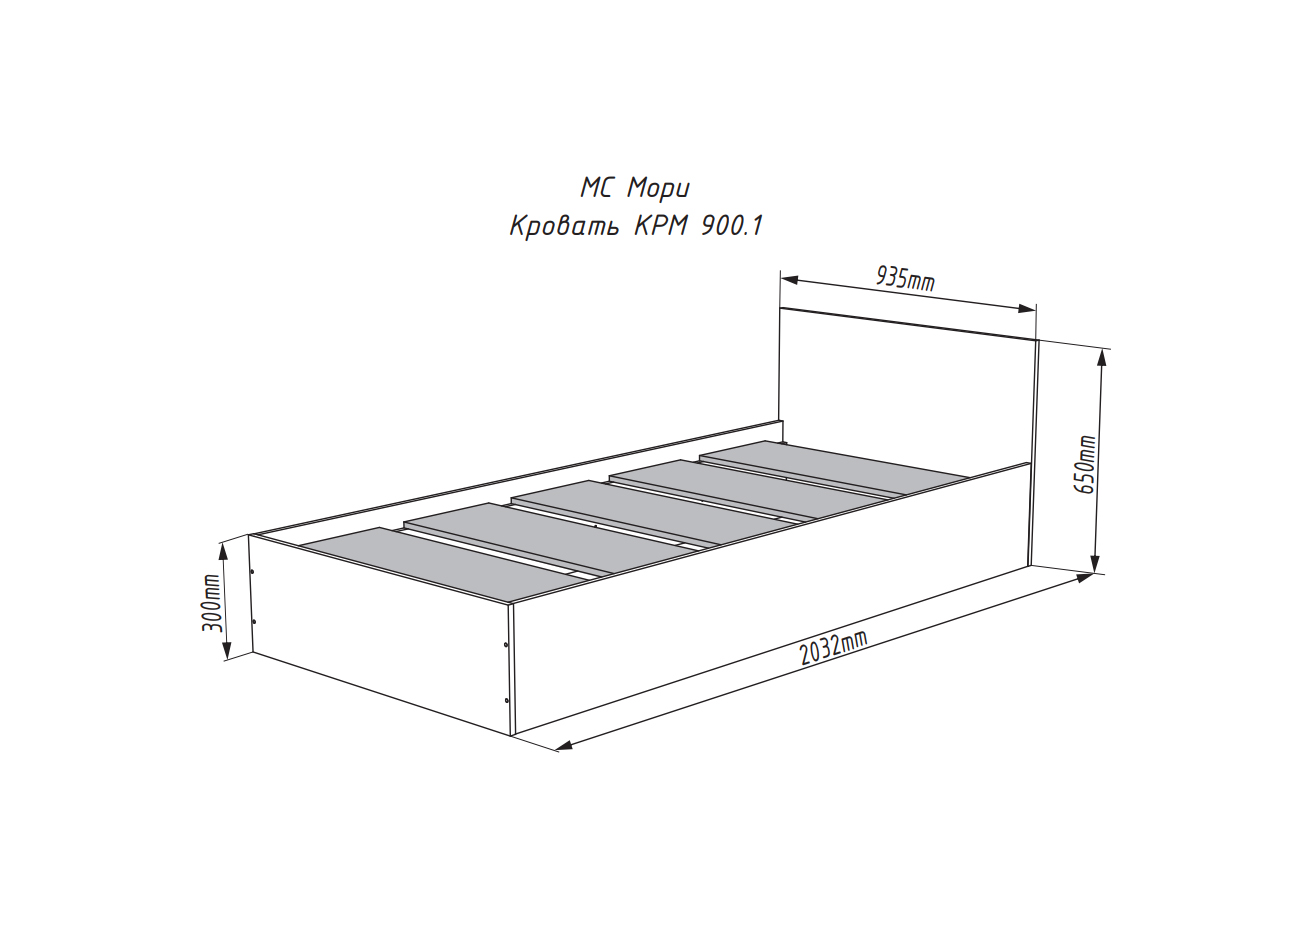 Кровати Кровать КРМ 900.1